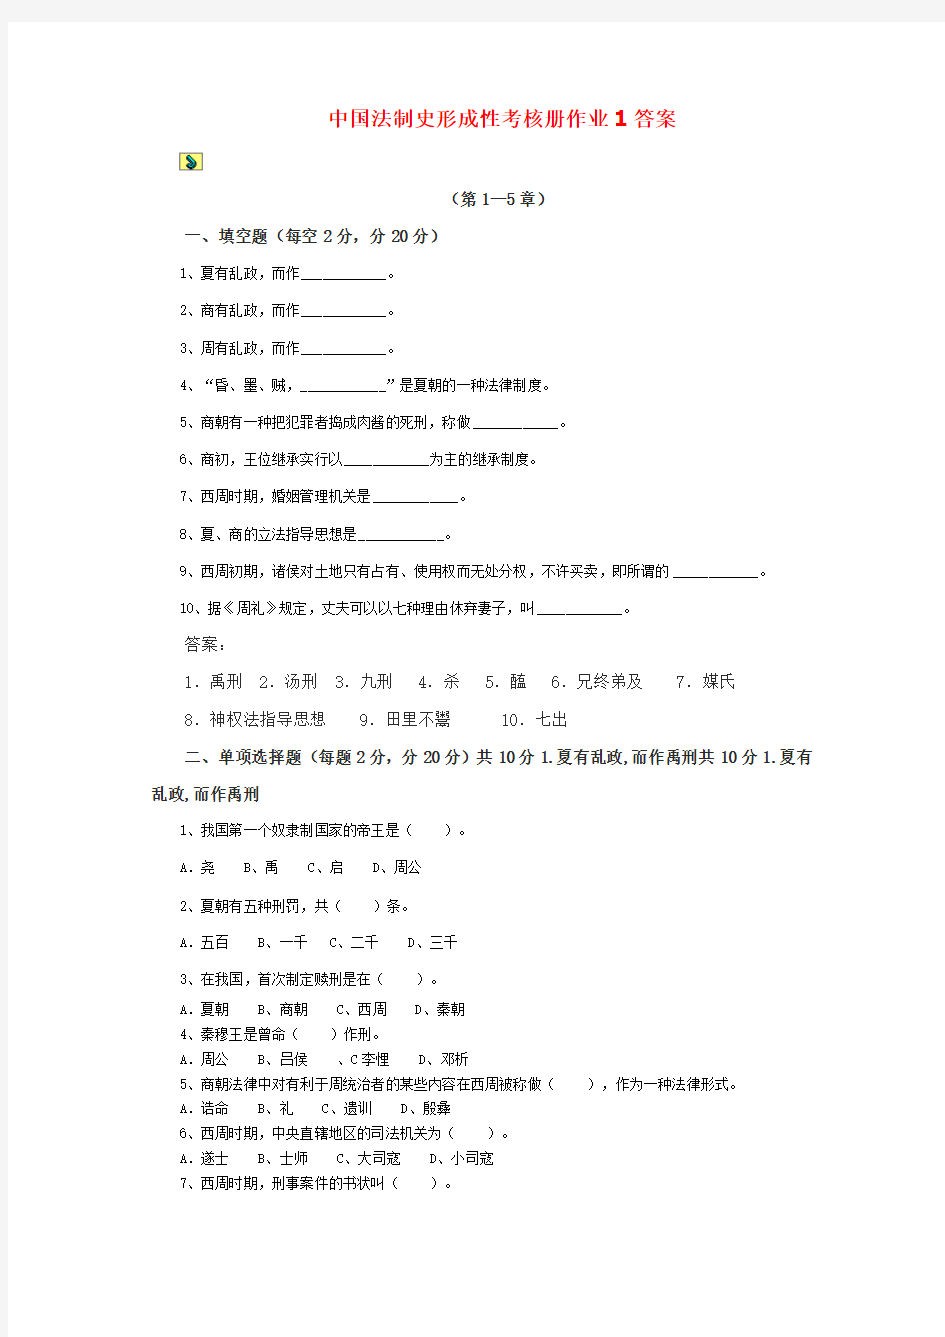 中国法制史形成性考核册作业答案--新